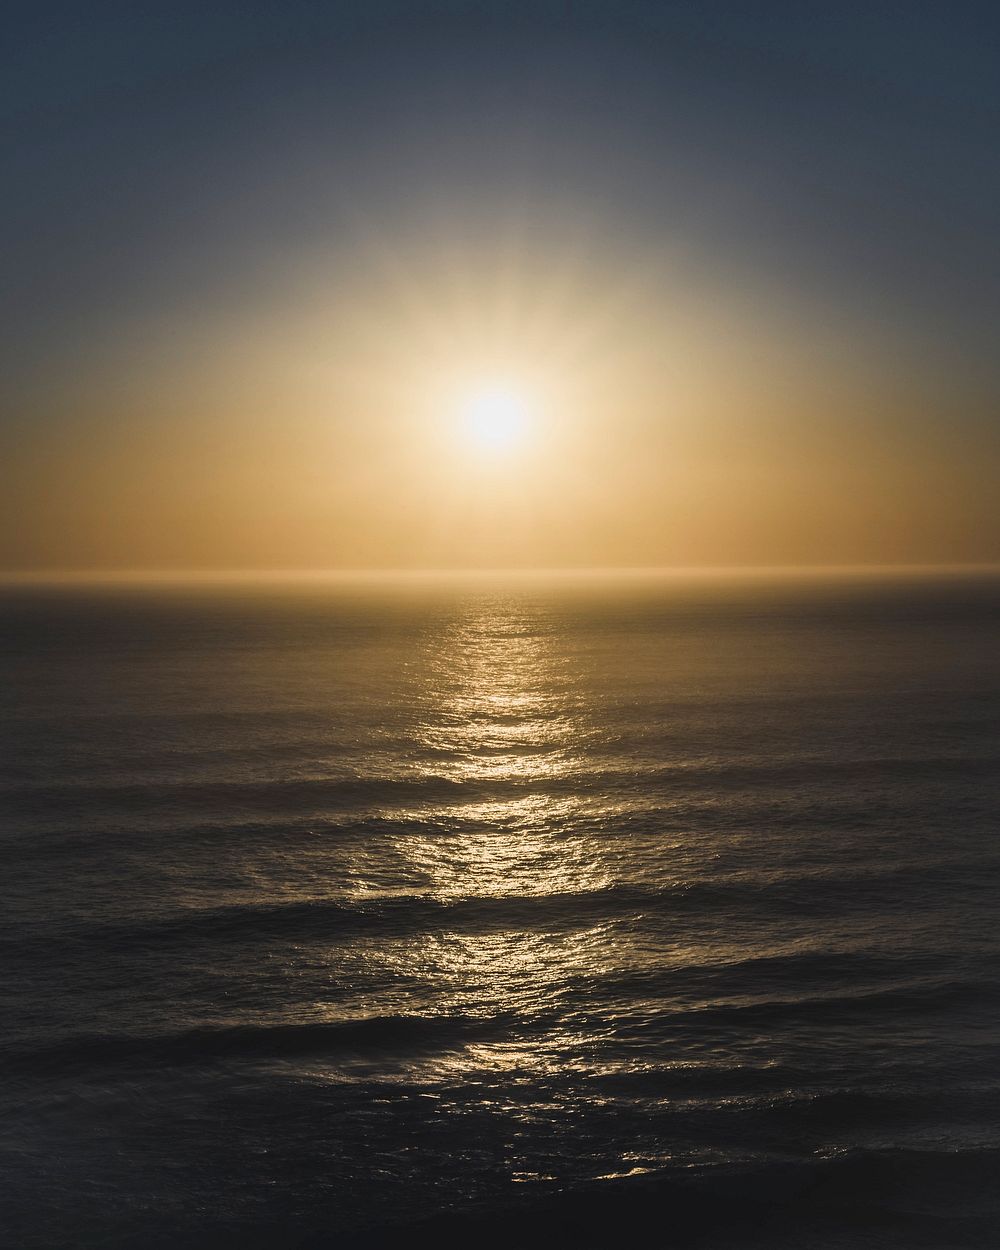 Sun setting over a sea